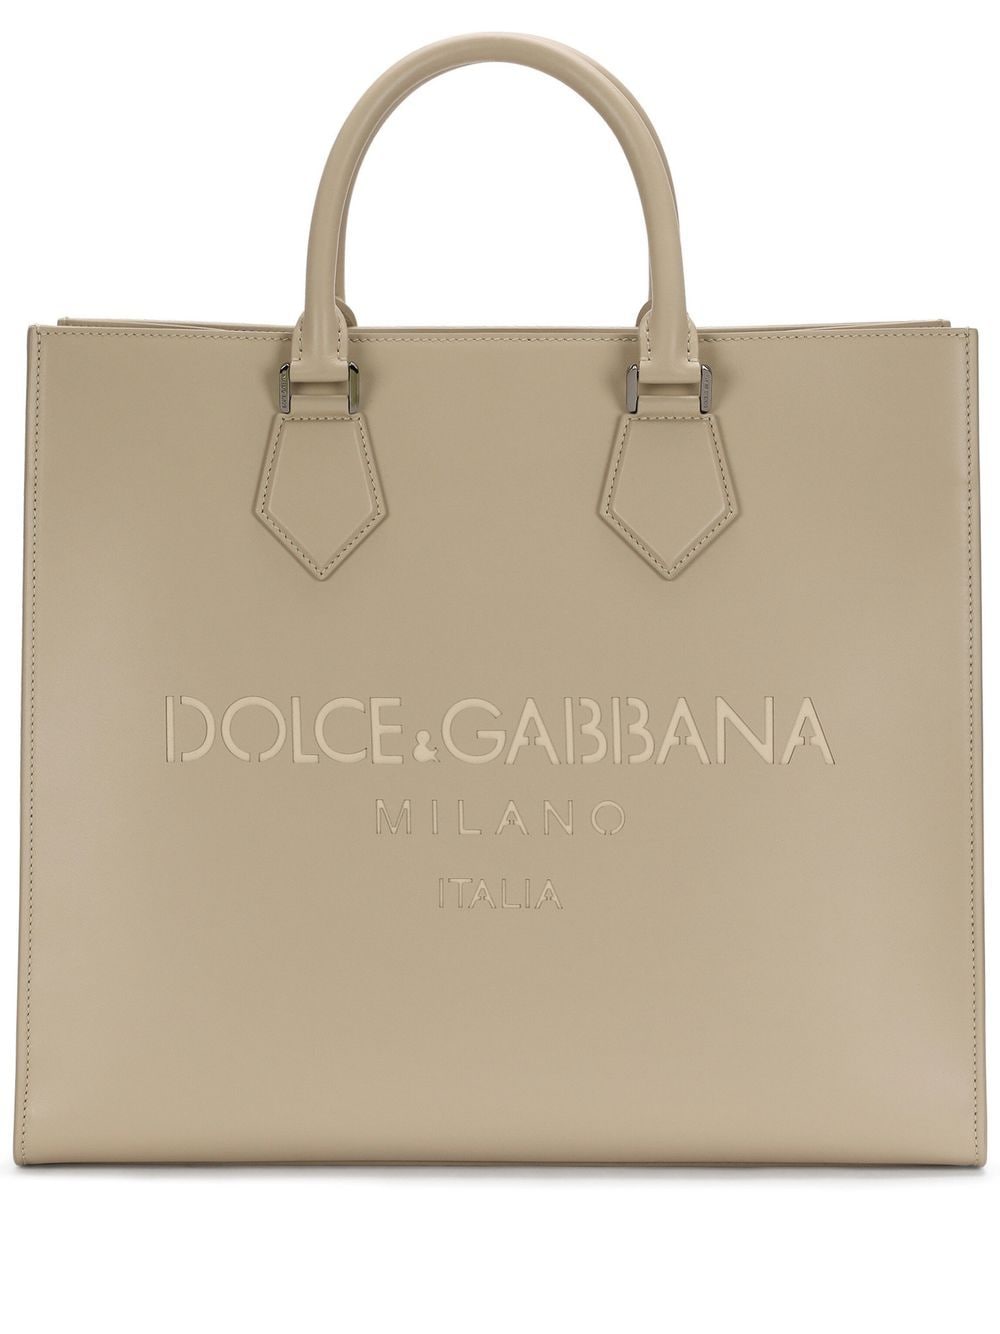 Dolce & Gabbana logo-debossed leather tote bag - Neutrals von Dolce & Gabbana